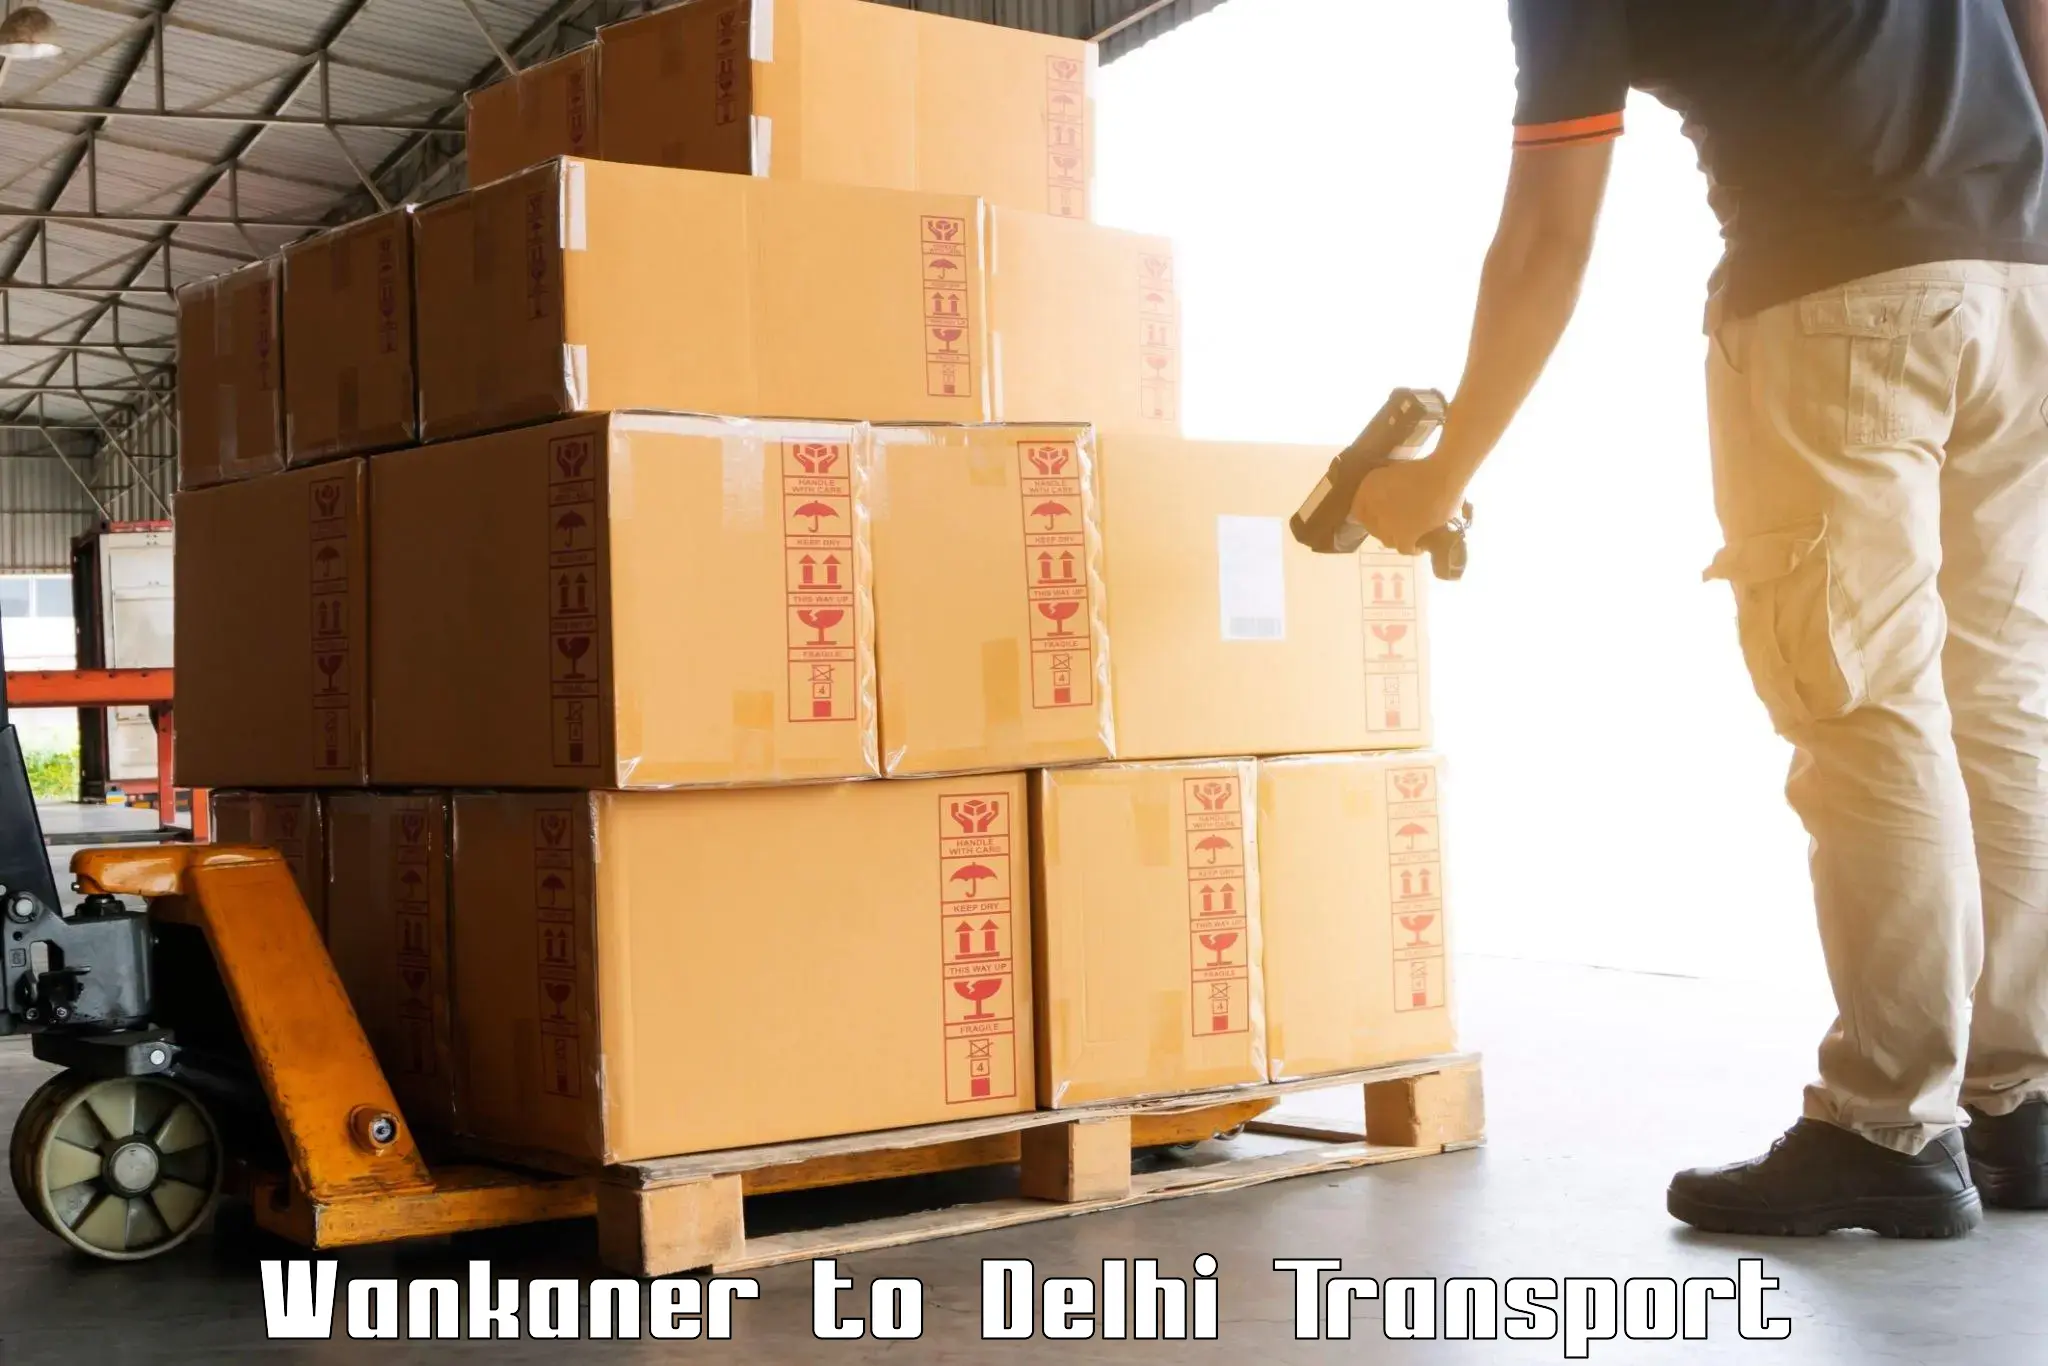 Door to door transport services Wankaner to Delhi Technological University DTU